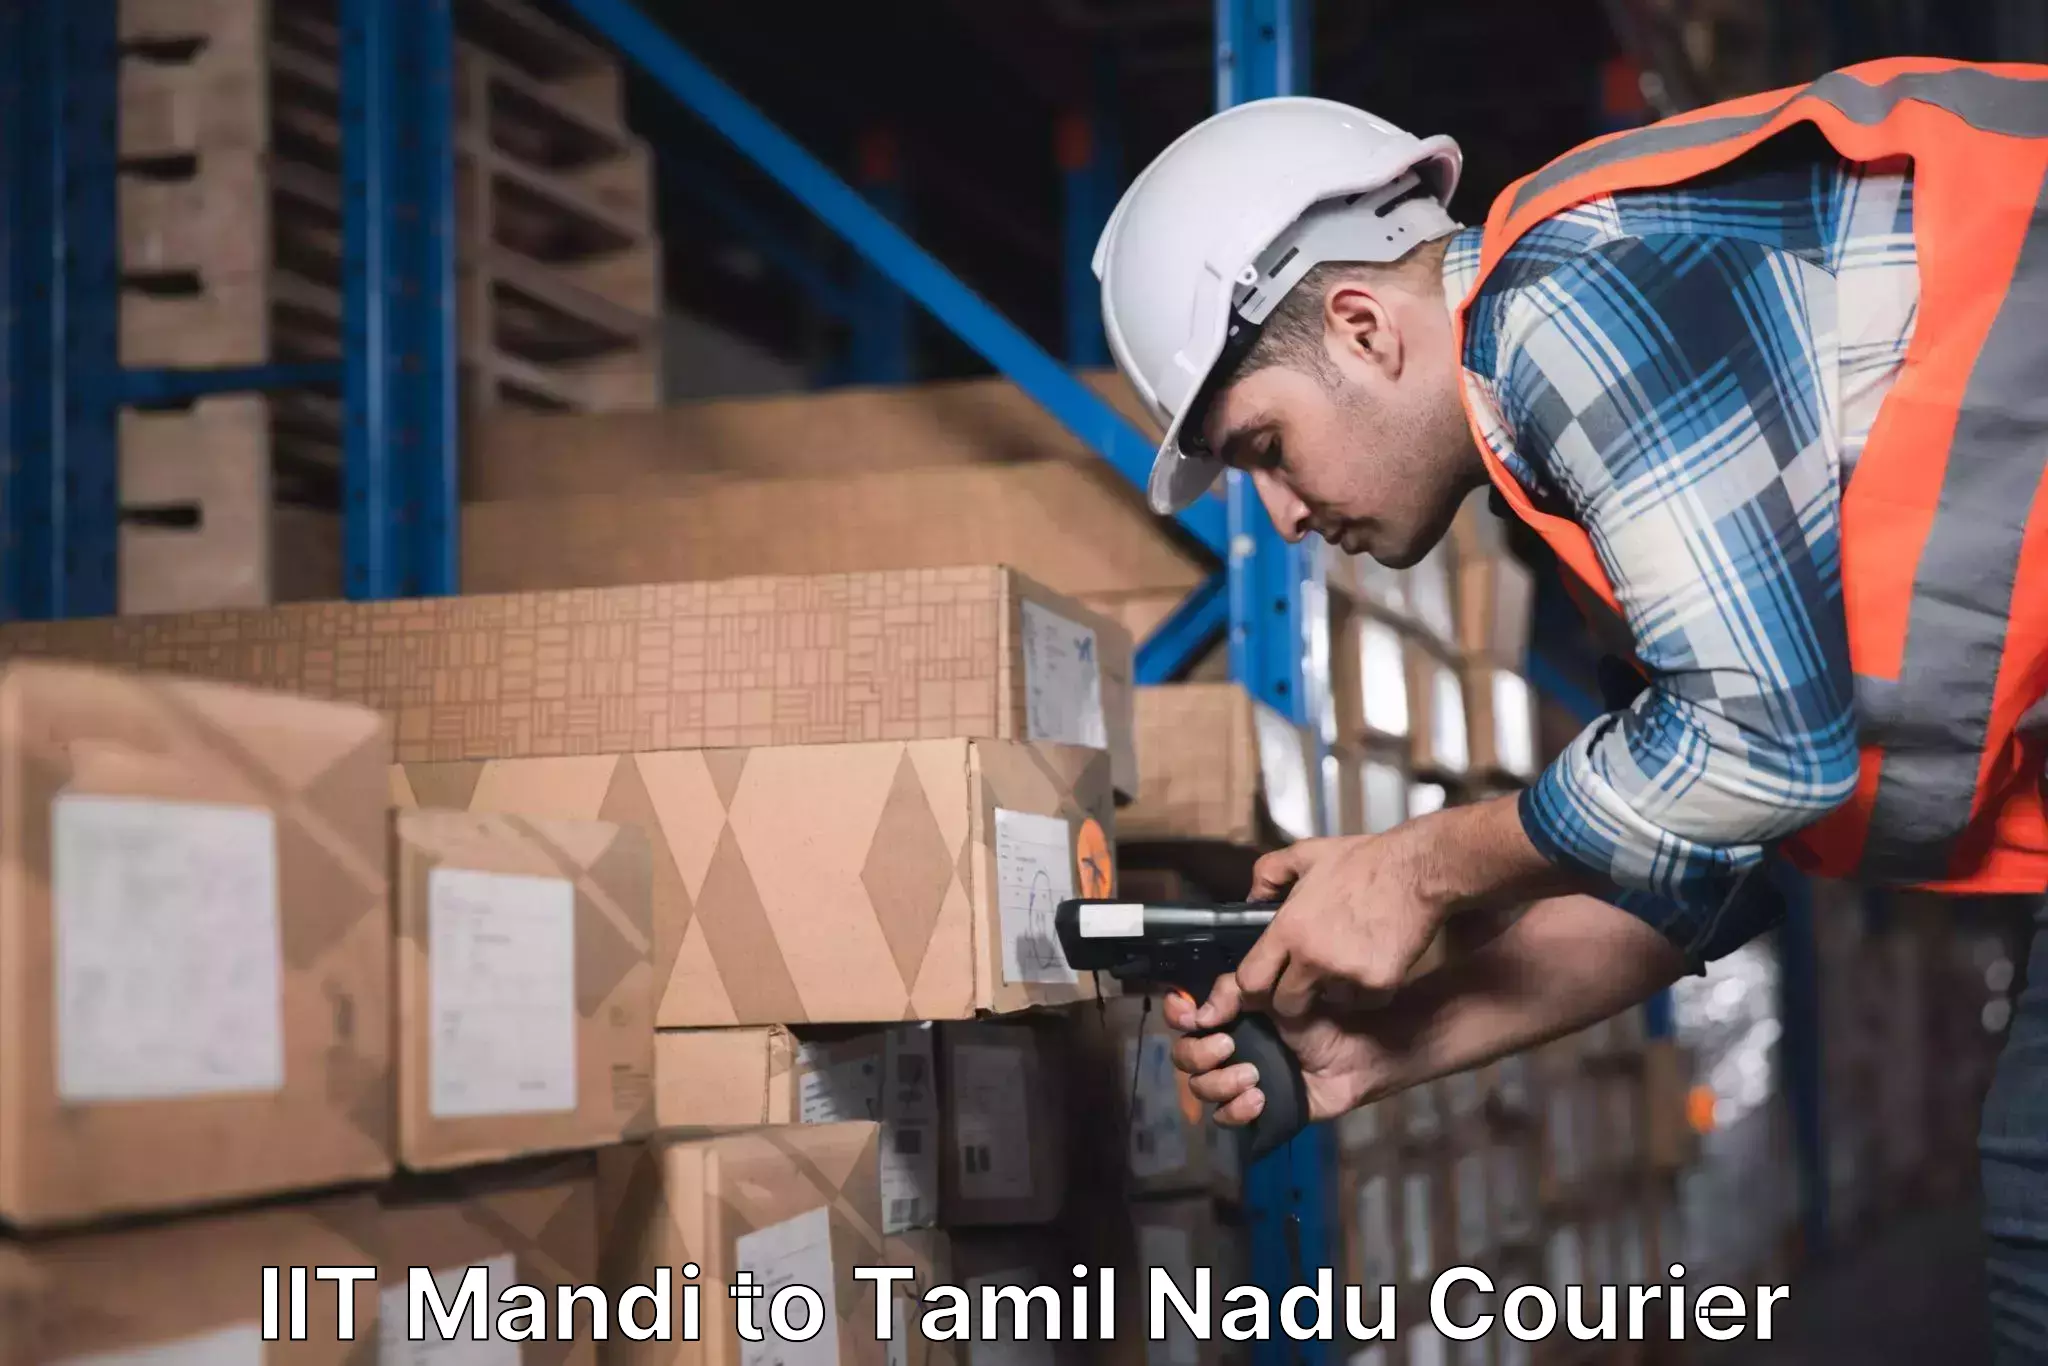 Reliable delivery network IIT Mandi to IIIT Tiruchirappalli